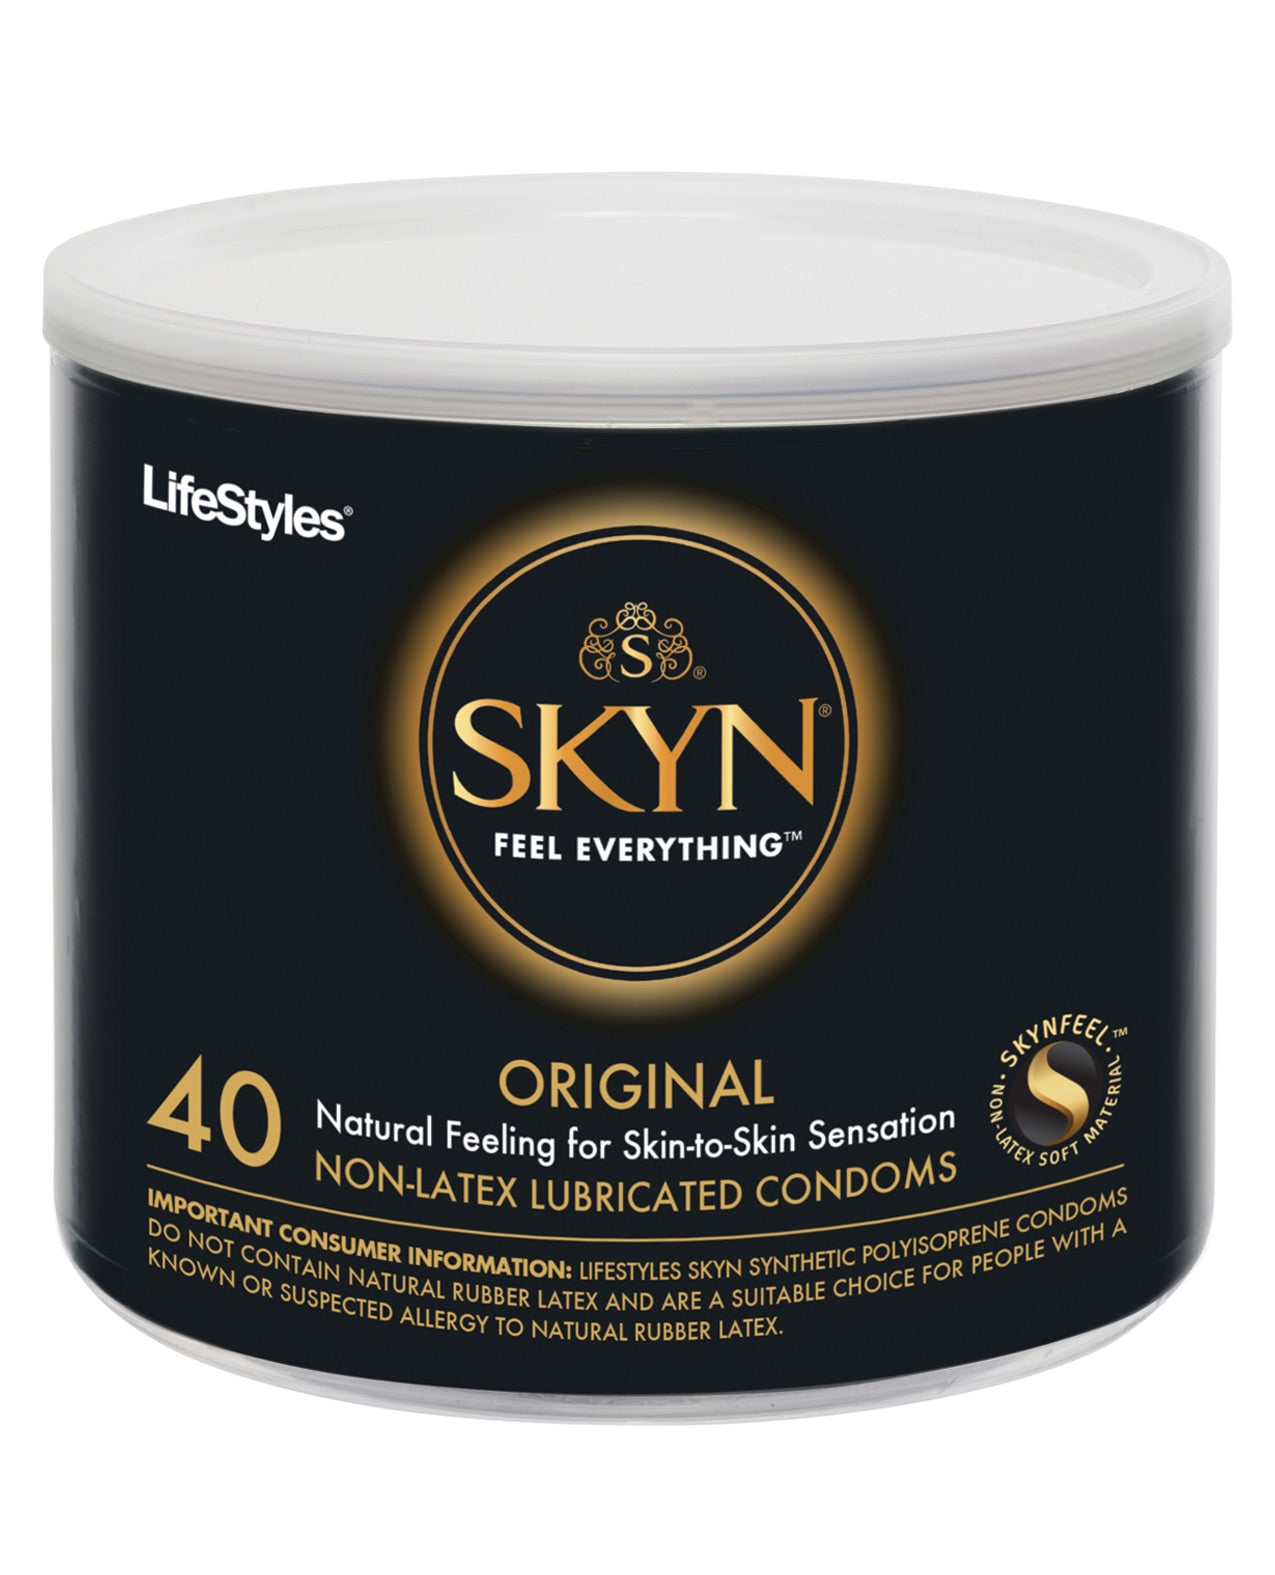 SKYN Original Condoms Bowl of 40 ❤️ WorldCondoms